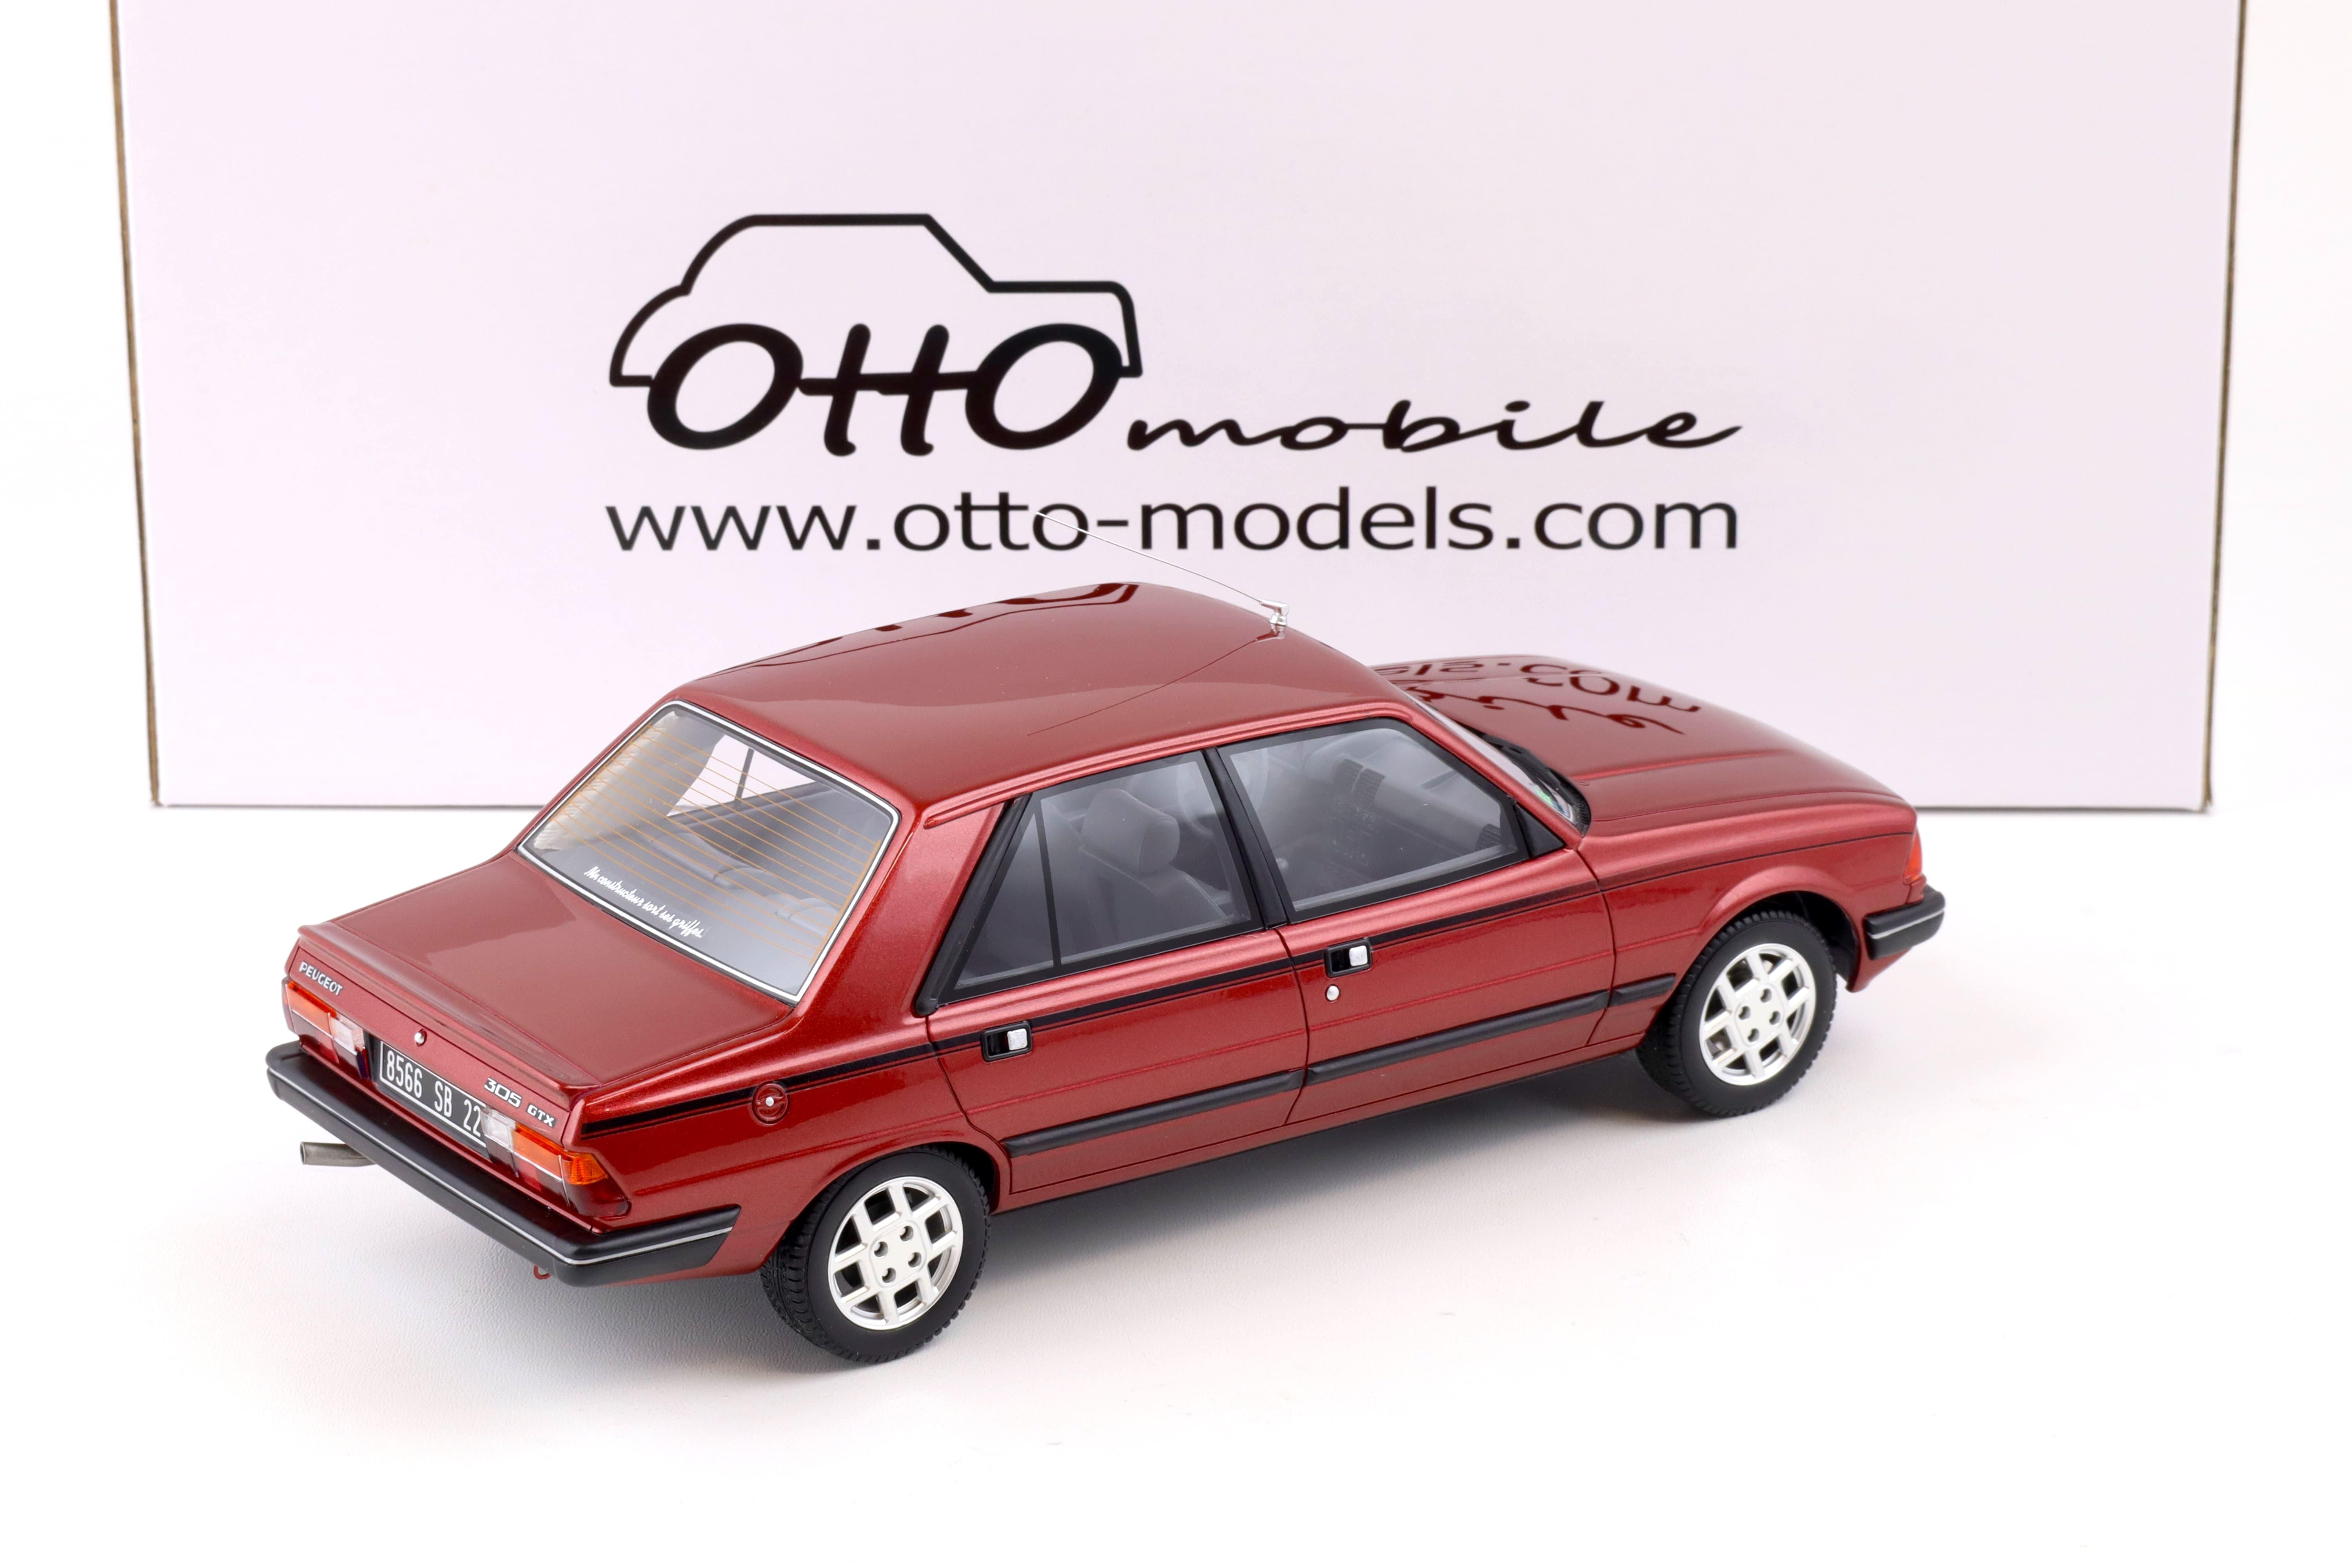 1:18 OTTO mobile OT1032 Peugeot 305 GTX Limousine red 1985